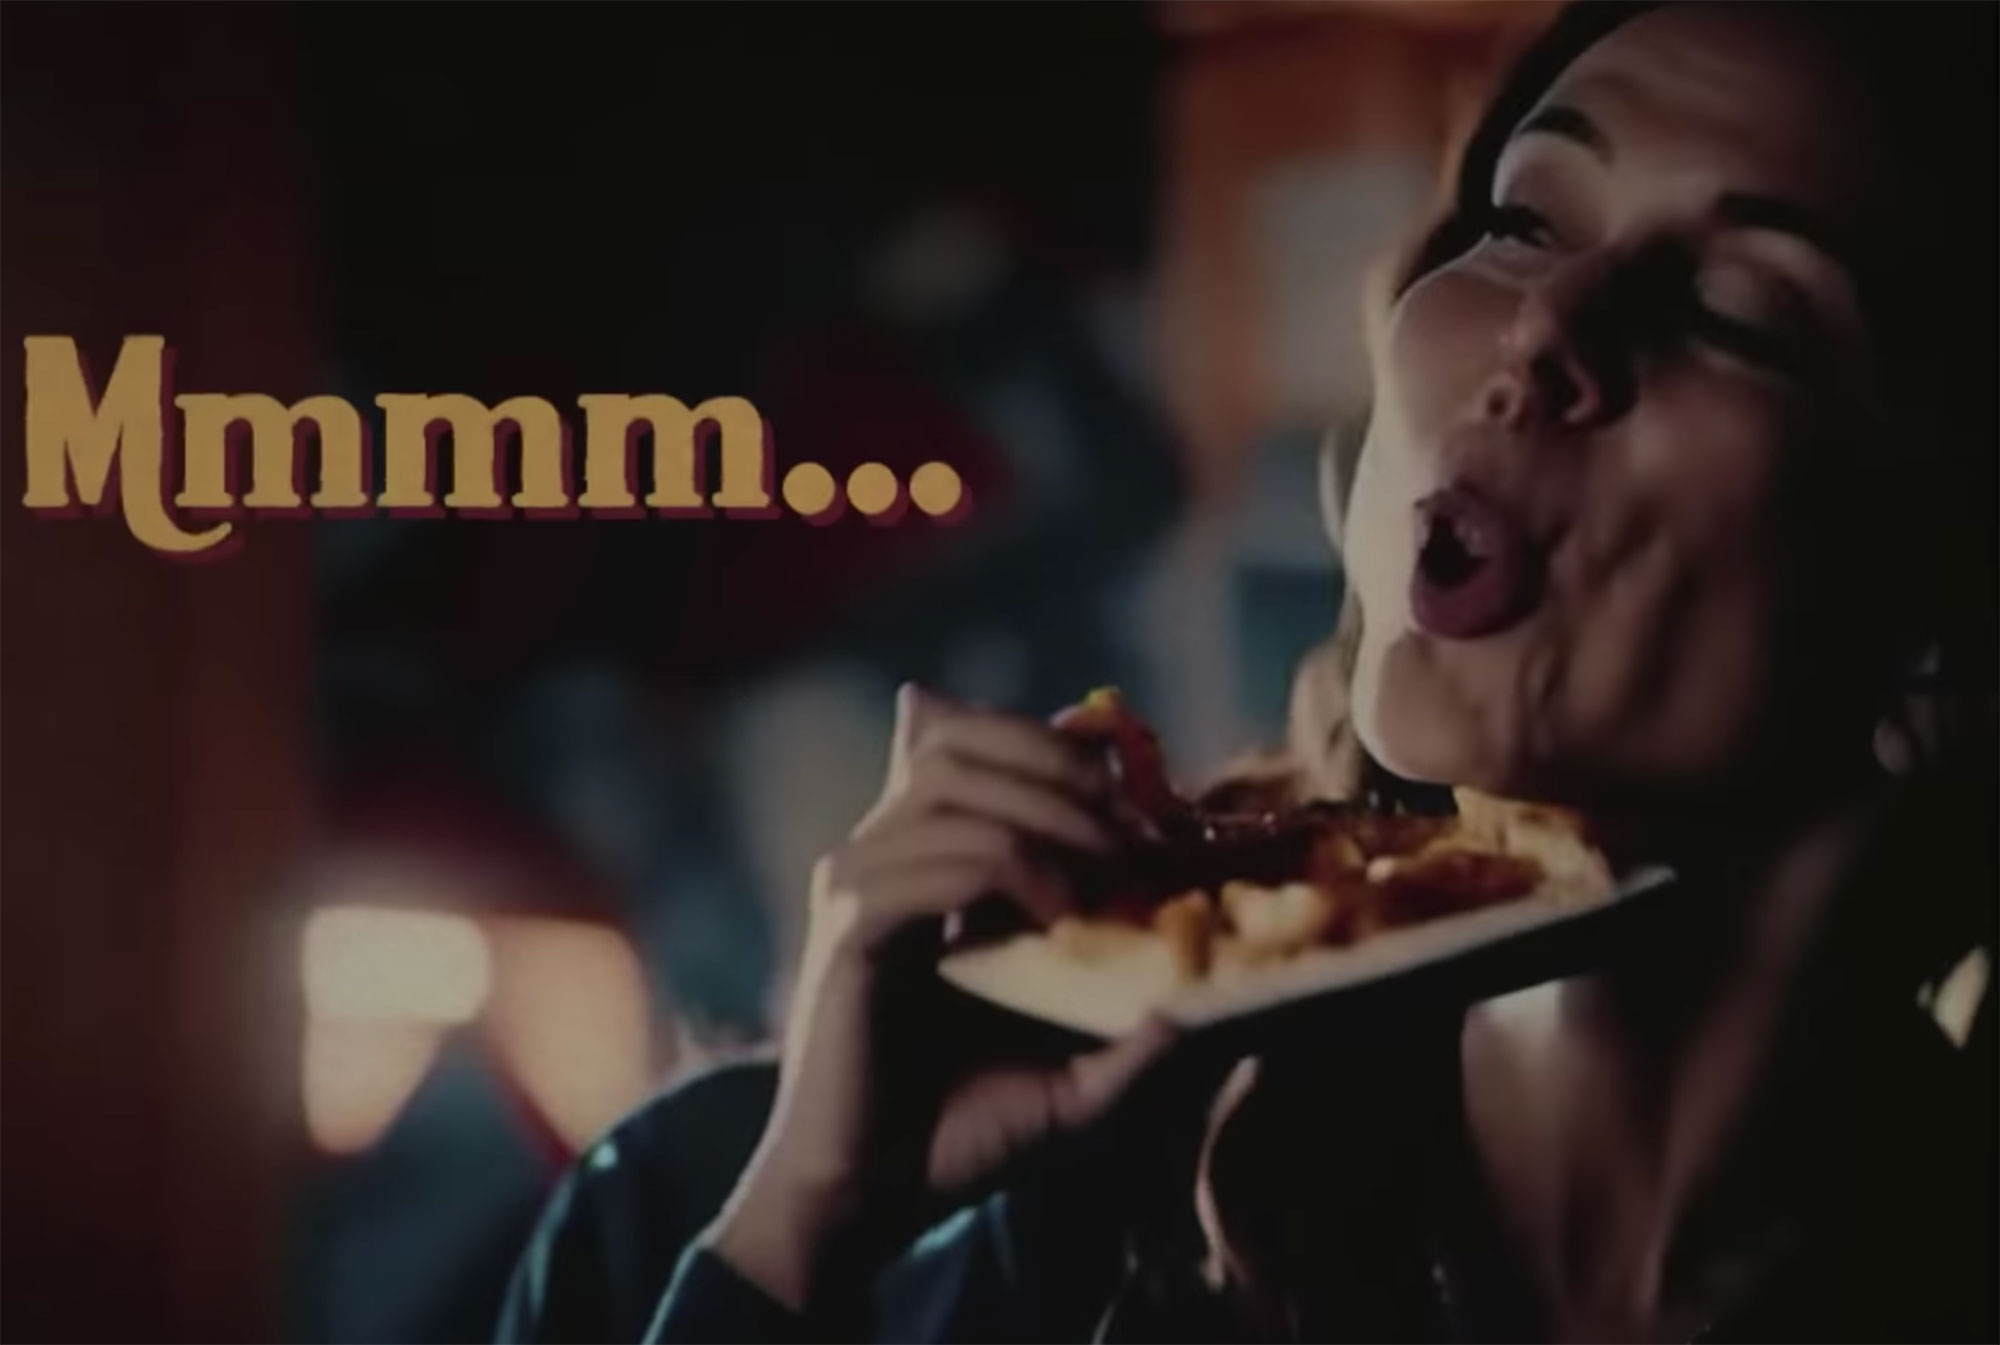 El comercial de pizza creado con IA que da asco (VIDEO)